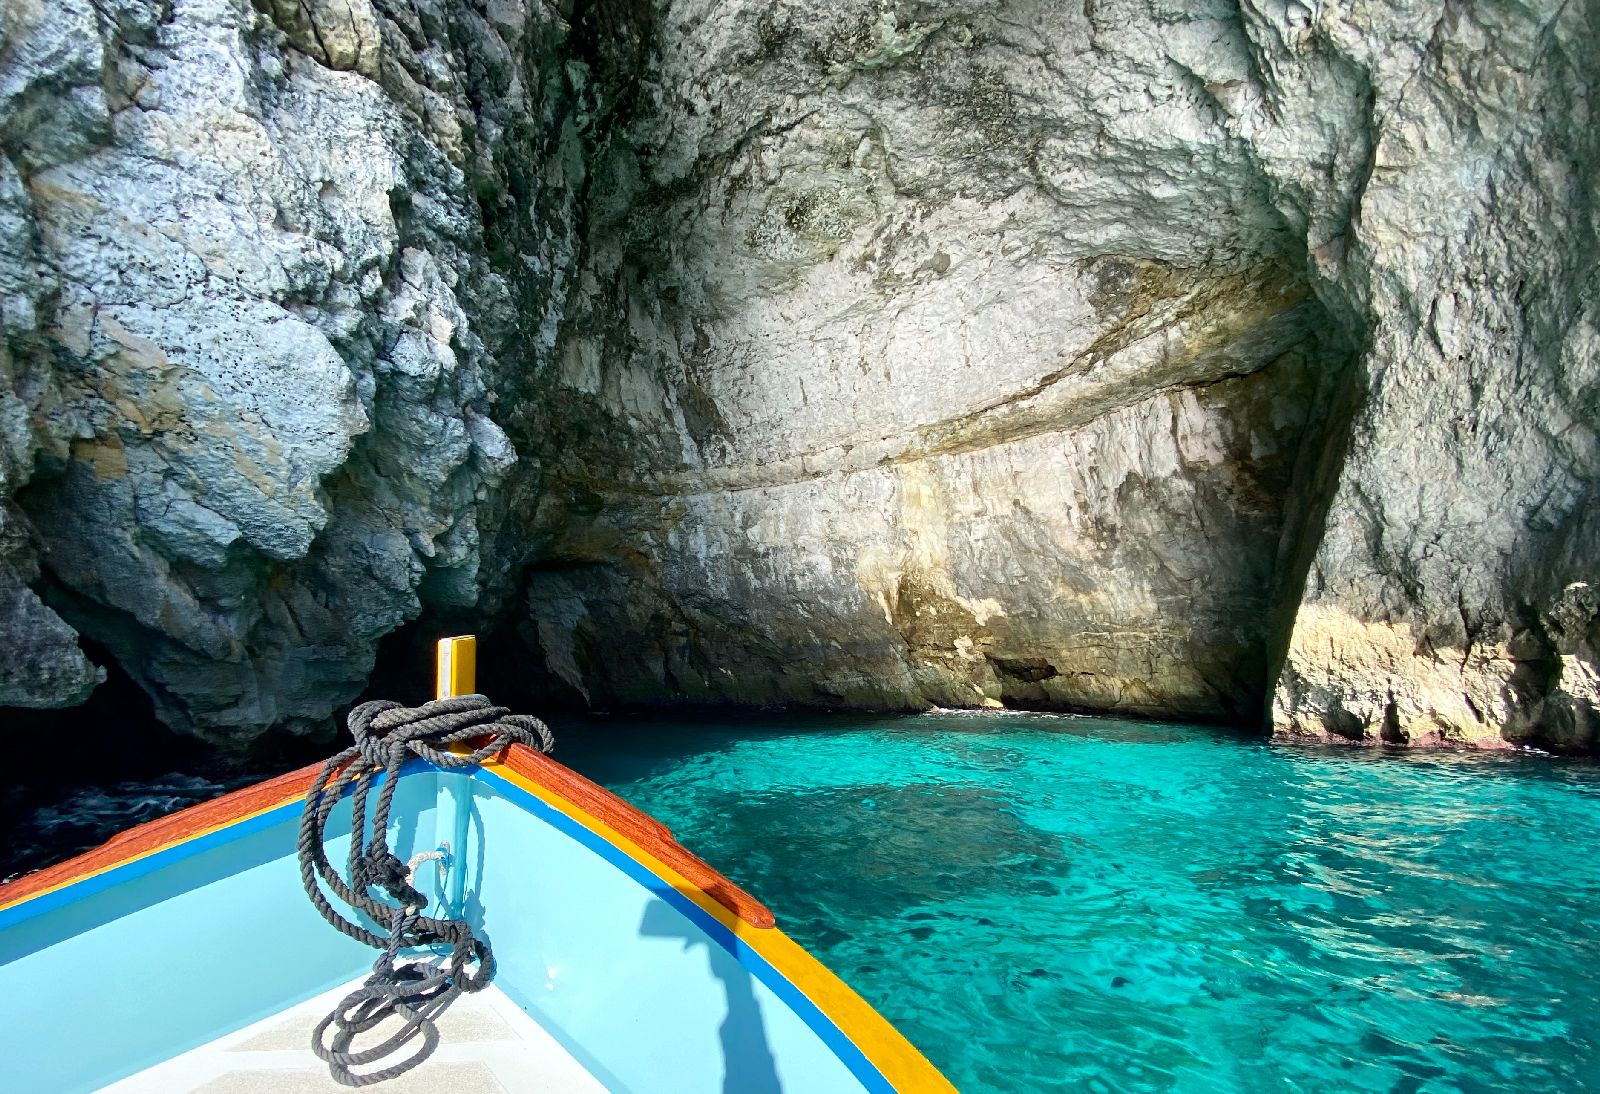 Boat entering the Blue Grotto in Malta